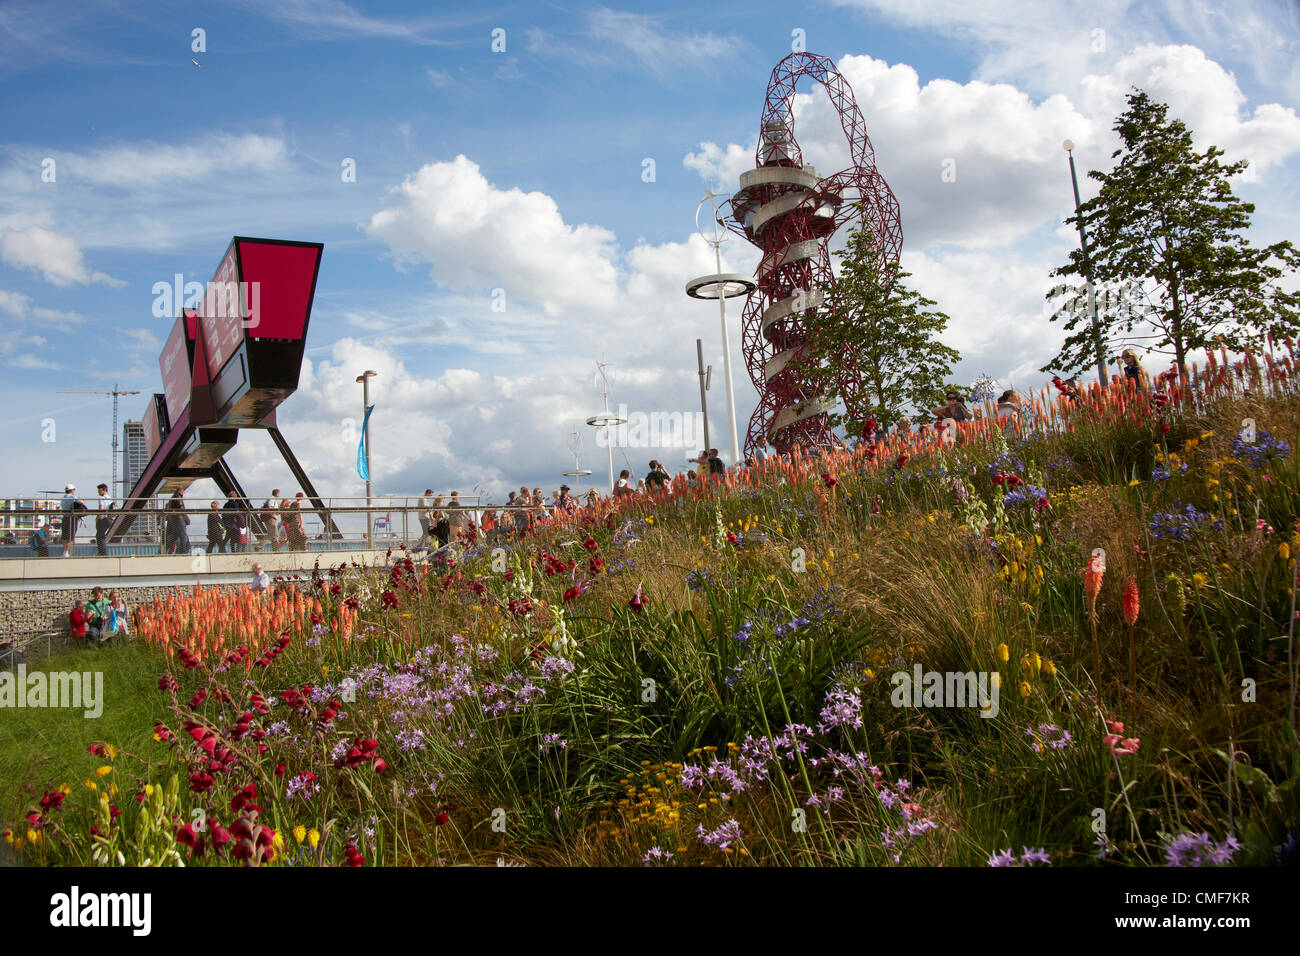 Puerta de Stratford, órbita y flores en el Parque Olímpico, el sitio de los Juegos Olímpicos de Londres 2012, Stratford London E20, REINO UNIDO Foto de stock